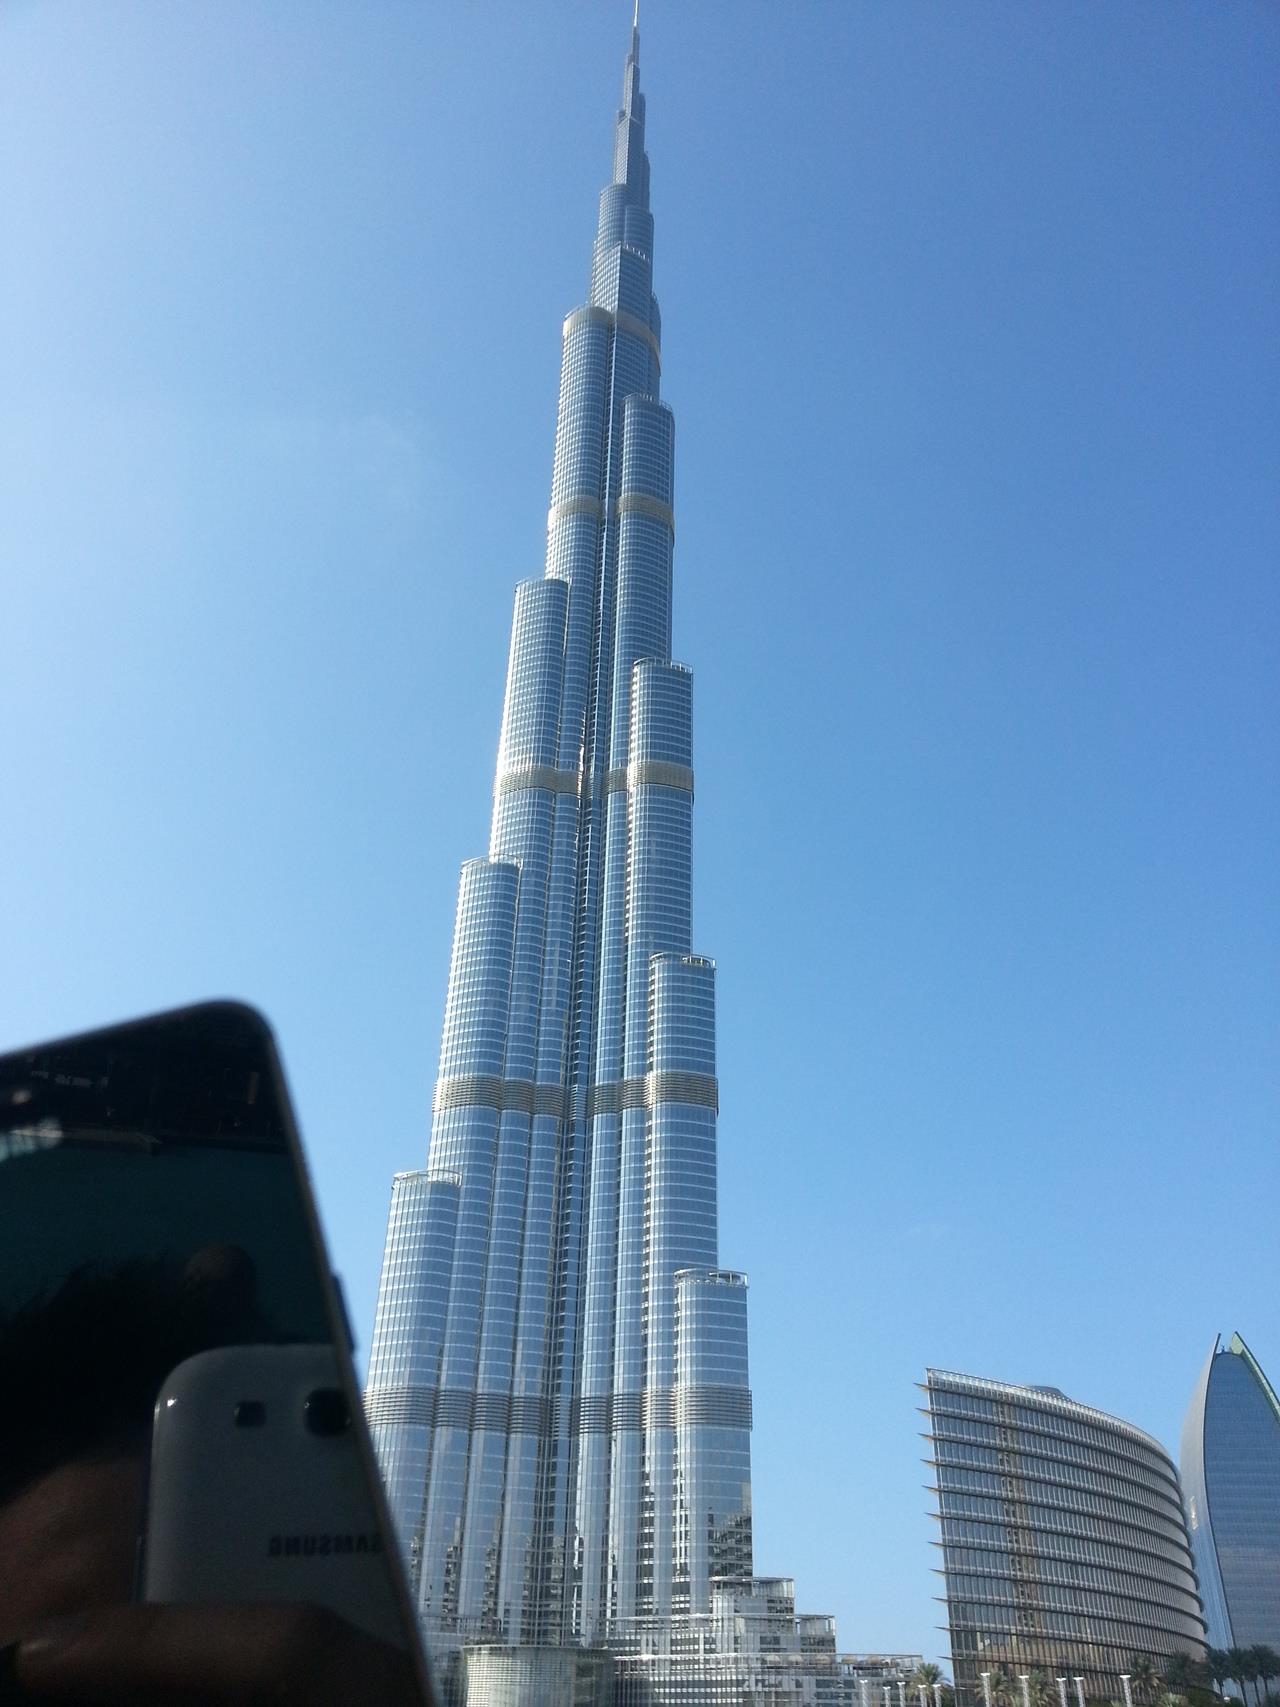 Burj Khalifa 828m - chyba wszyscy pamiętamy otwarcie tego budynku